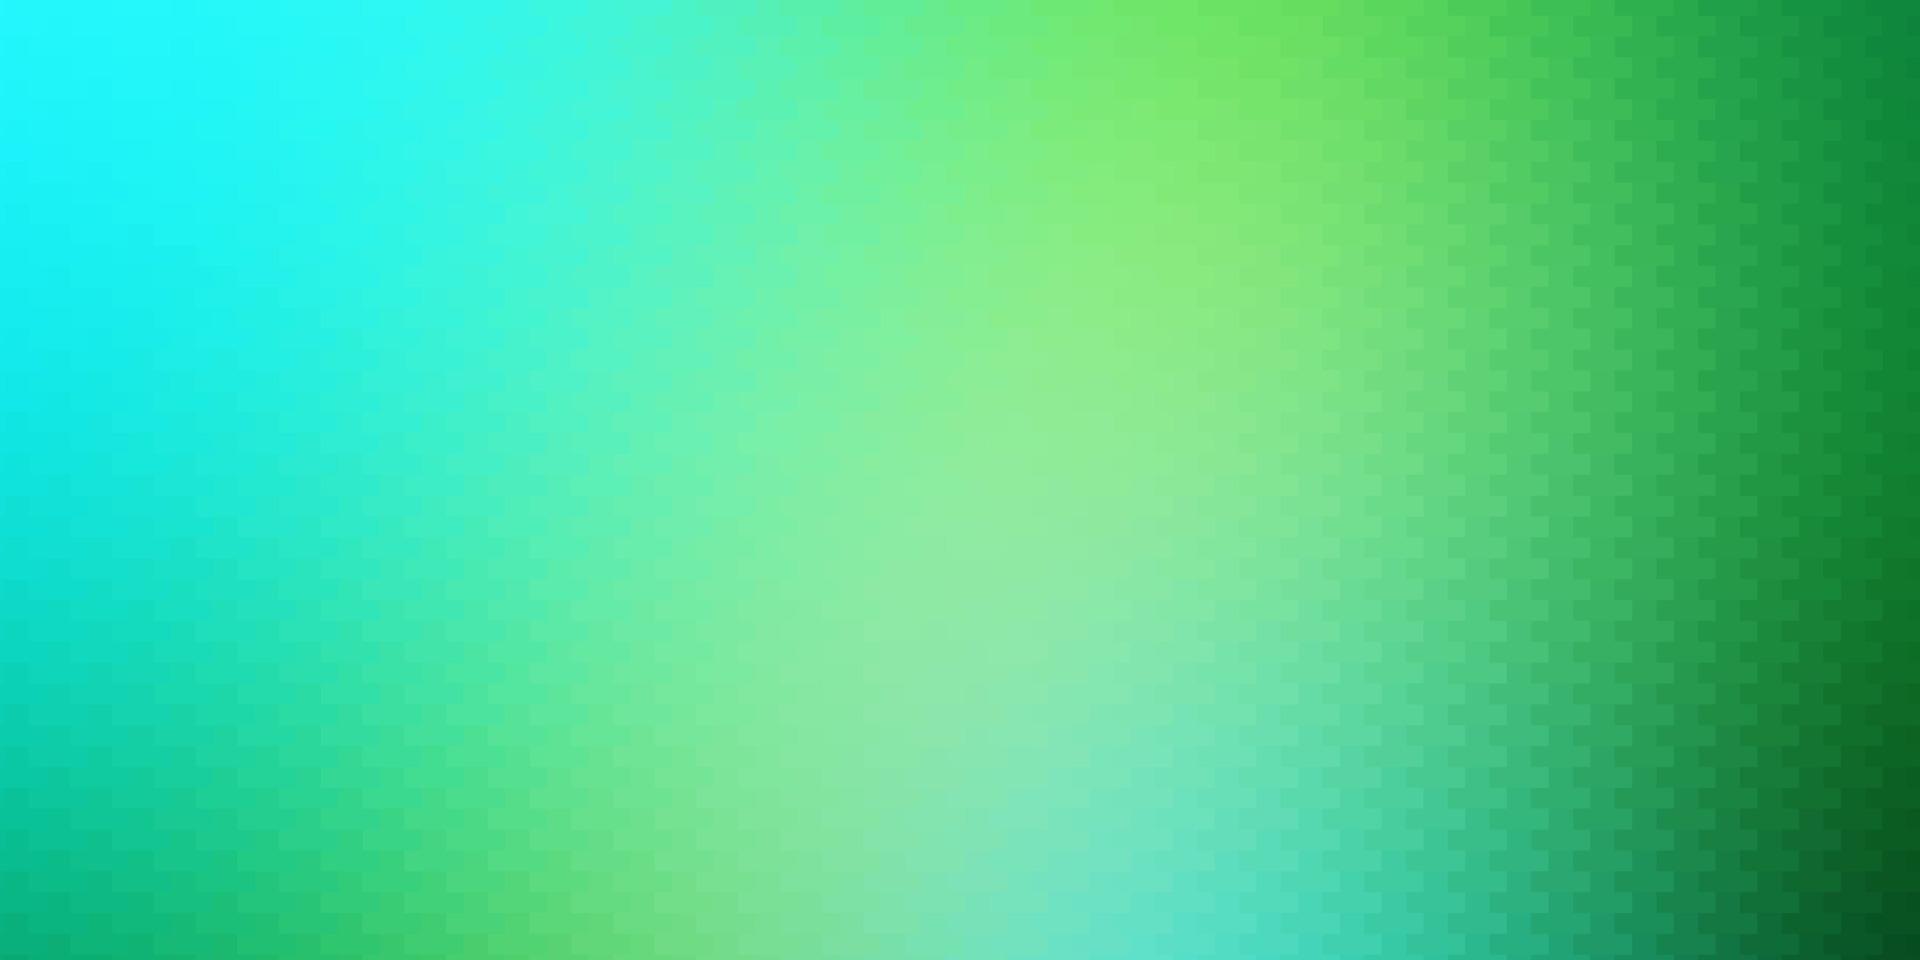 Fondo de vector azul claro, verde en estilo poligonal.